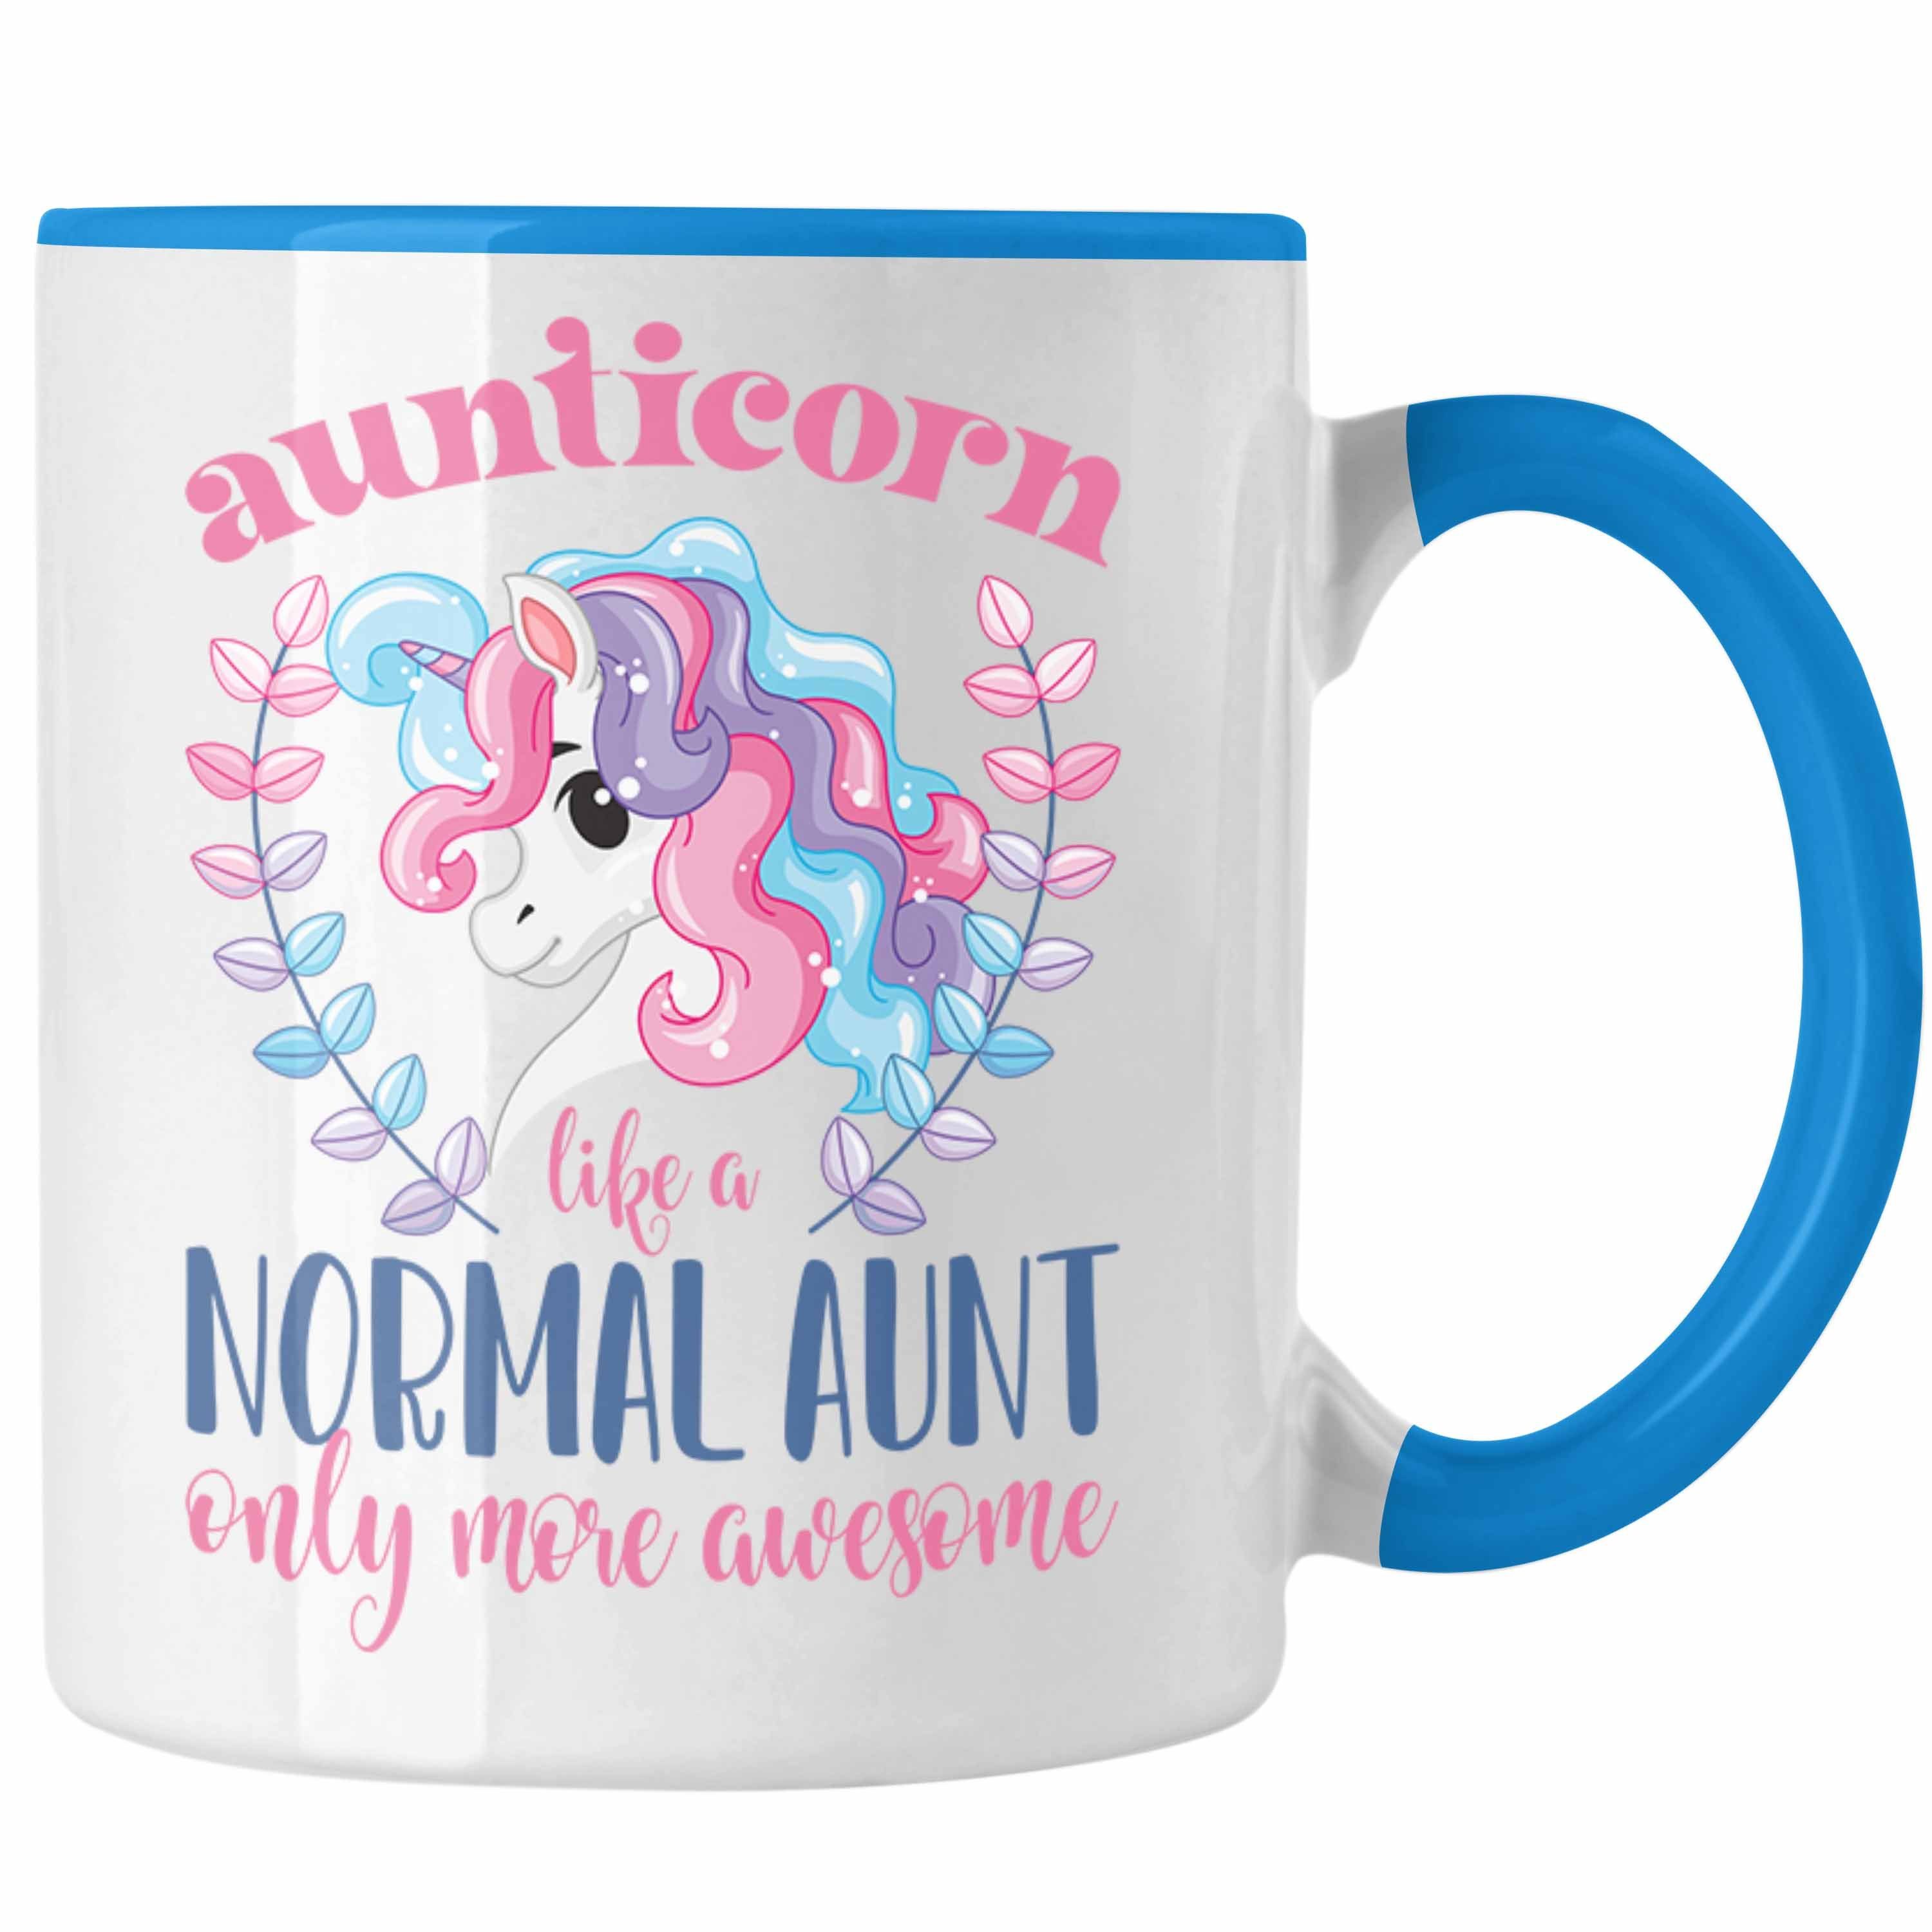 Trendation Tasse Trendation - Aunitcorn Tasse Geschenk für Beste Tante Kaffeetasse Geschenkidee Tante Geburtstag Lustig Blau